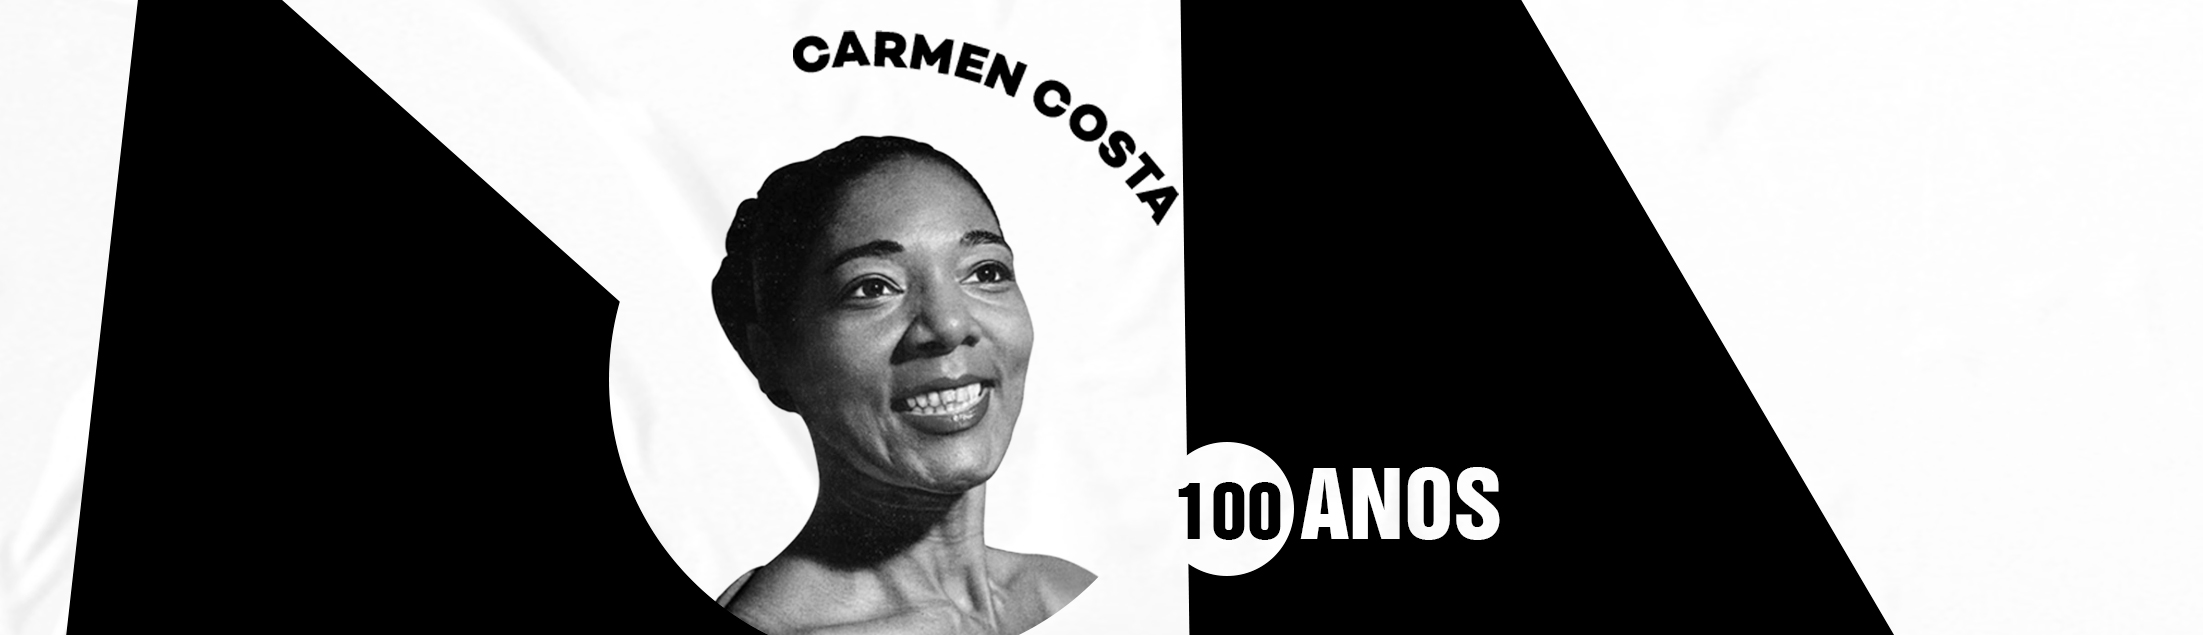 Carmen Costa: o centenário de um patrimônio cultural do Brasil